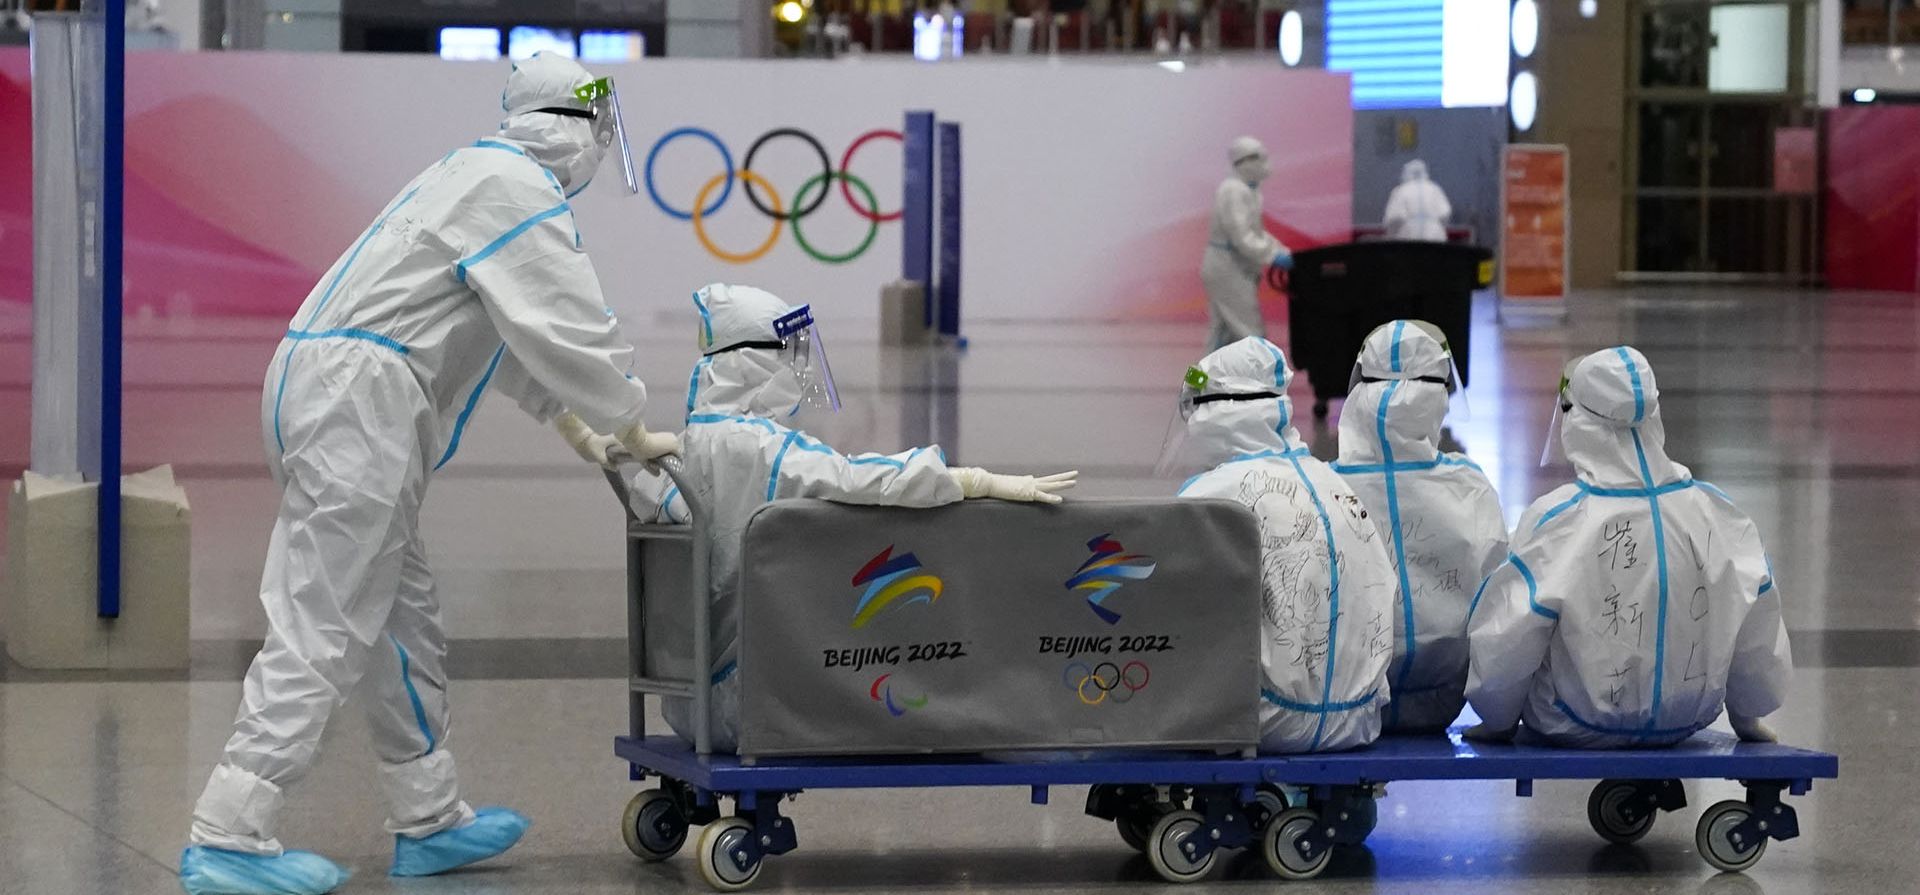 Voluntarios viajan en un carrito en el Aeropuerto Internacional Capital de Beijing después de la finalización de los Juegos Olímpicos de Invierno de 2022, el domingo 20 de febrero de 2022 en Beijing.